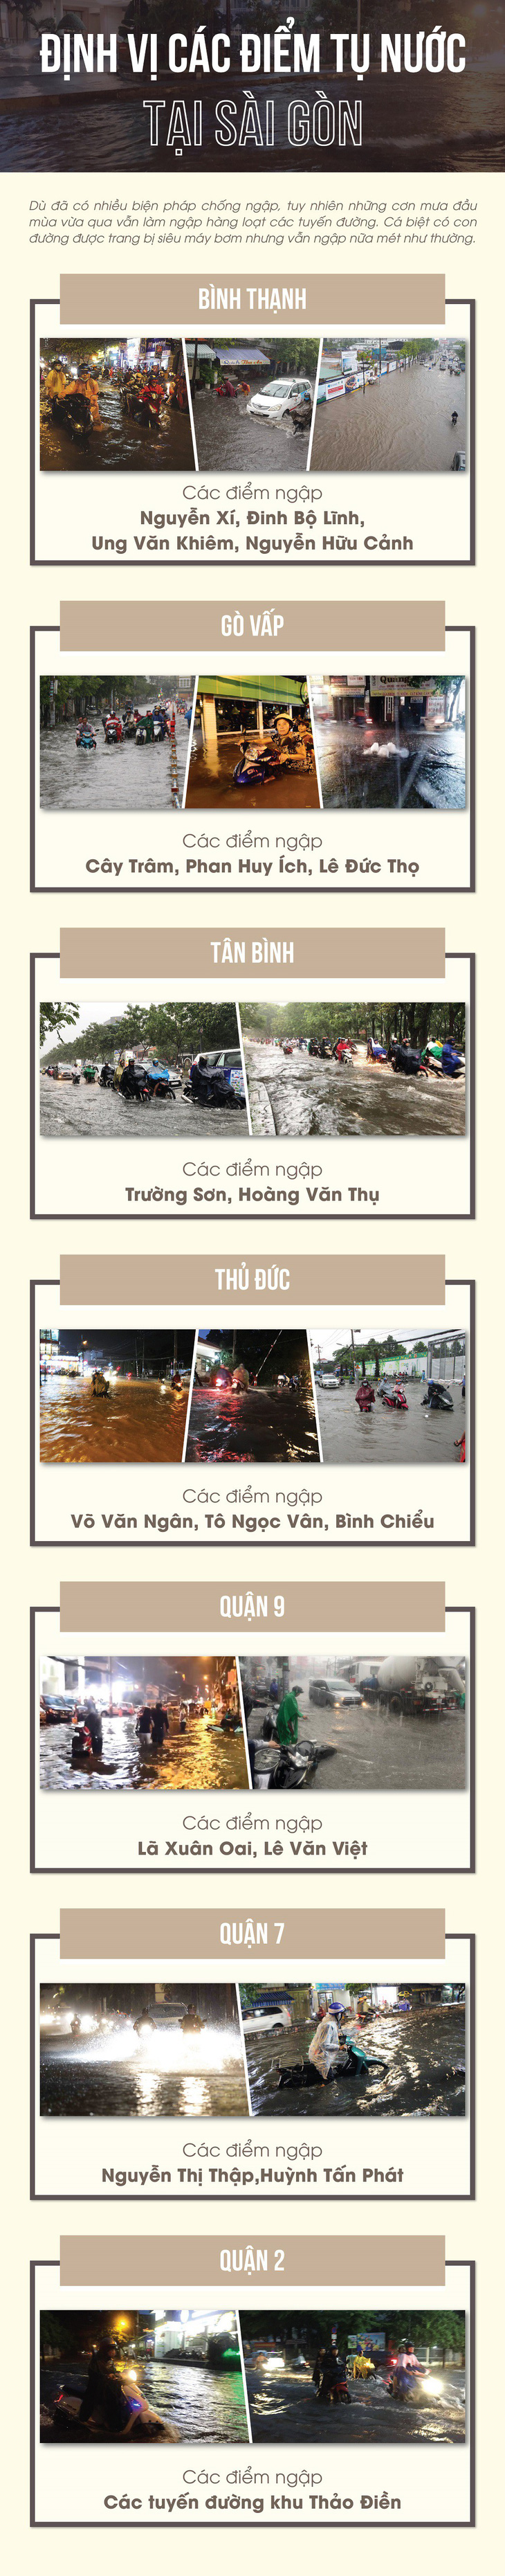 Định vị các cung đường hay ngập ở Sài Gòn - Ảnh 1.